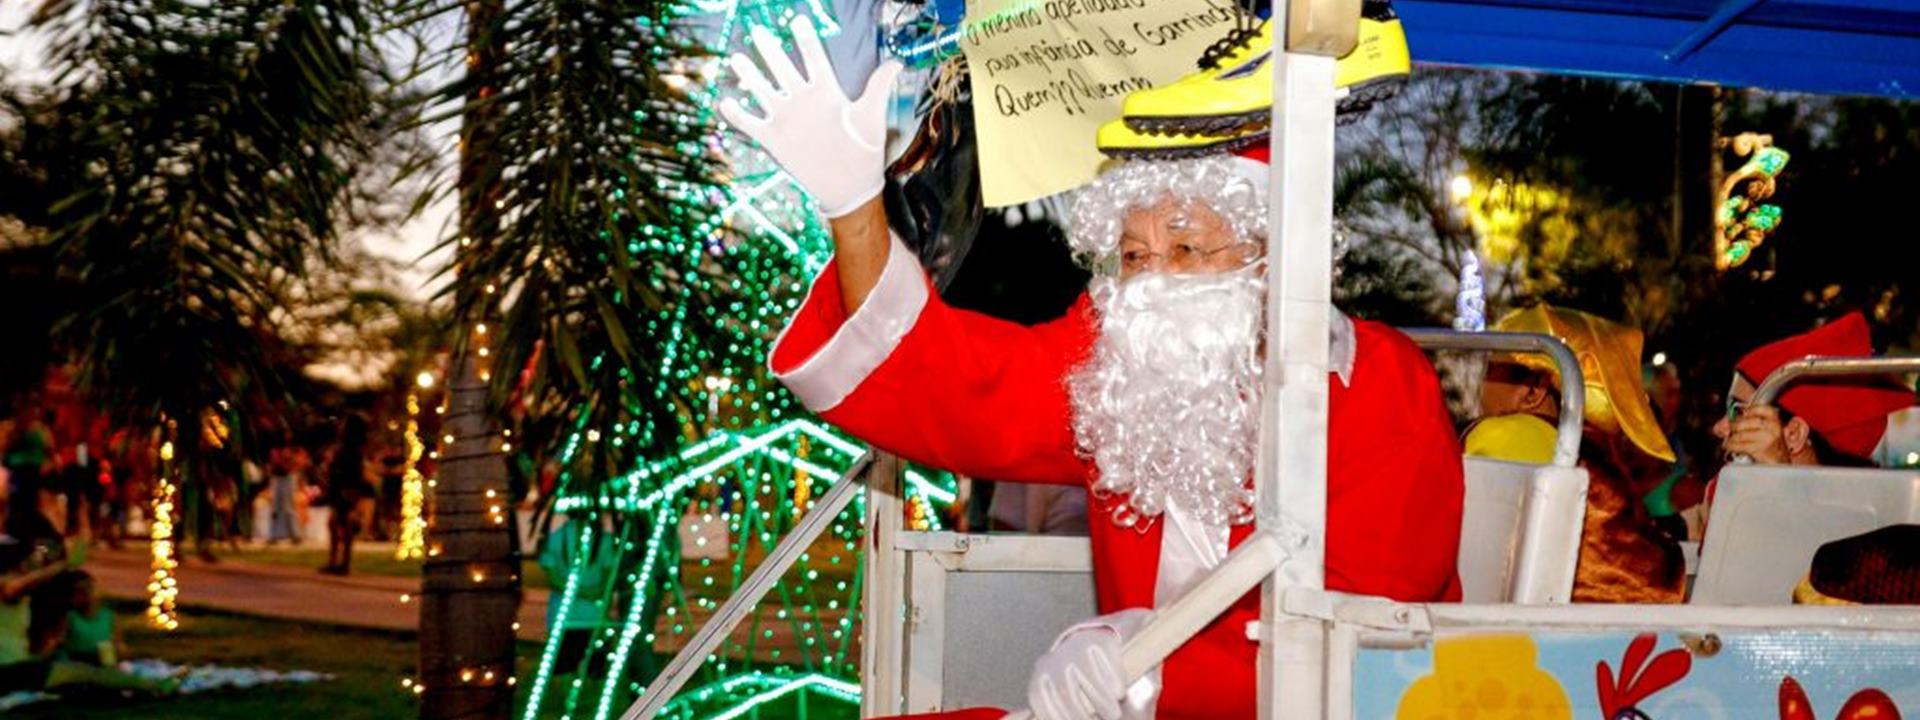 Papai Noel Dr. Pessoa entrega presentes para crianças no "Natal dos Sonhos" em Teresina